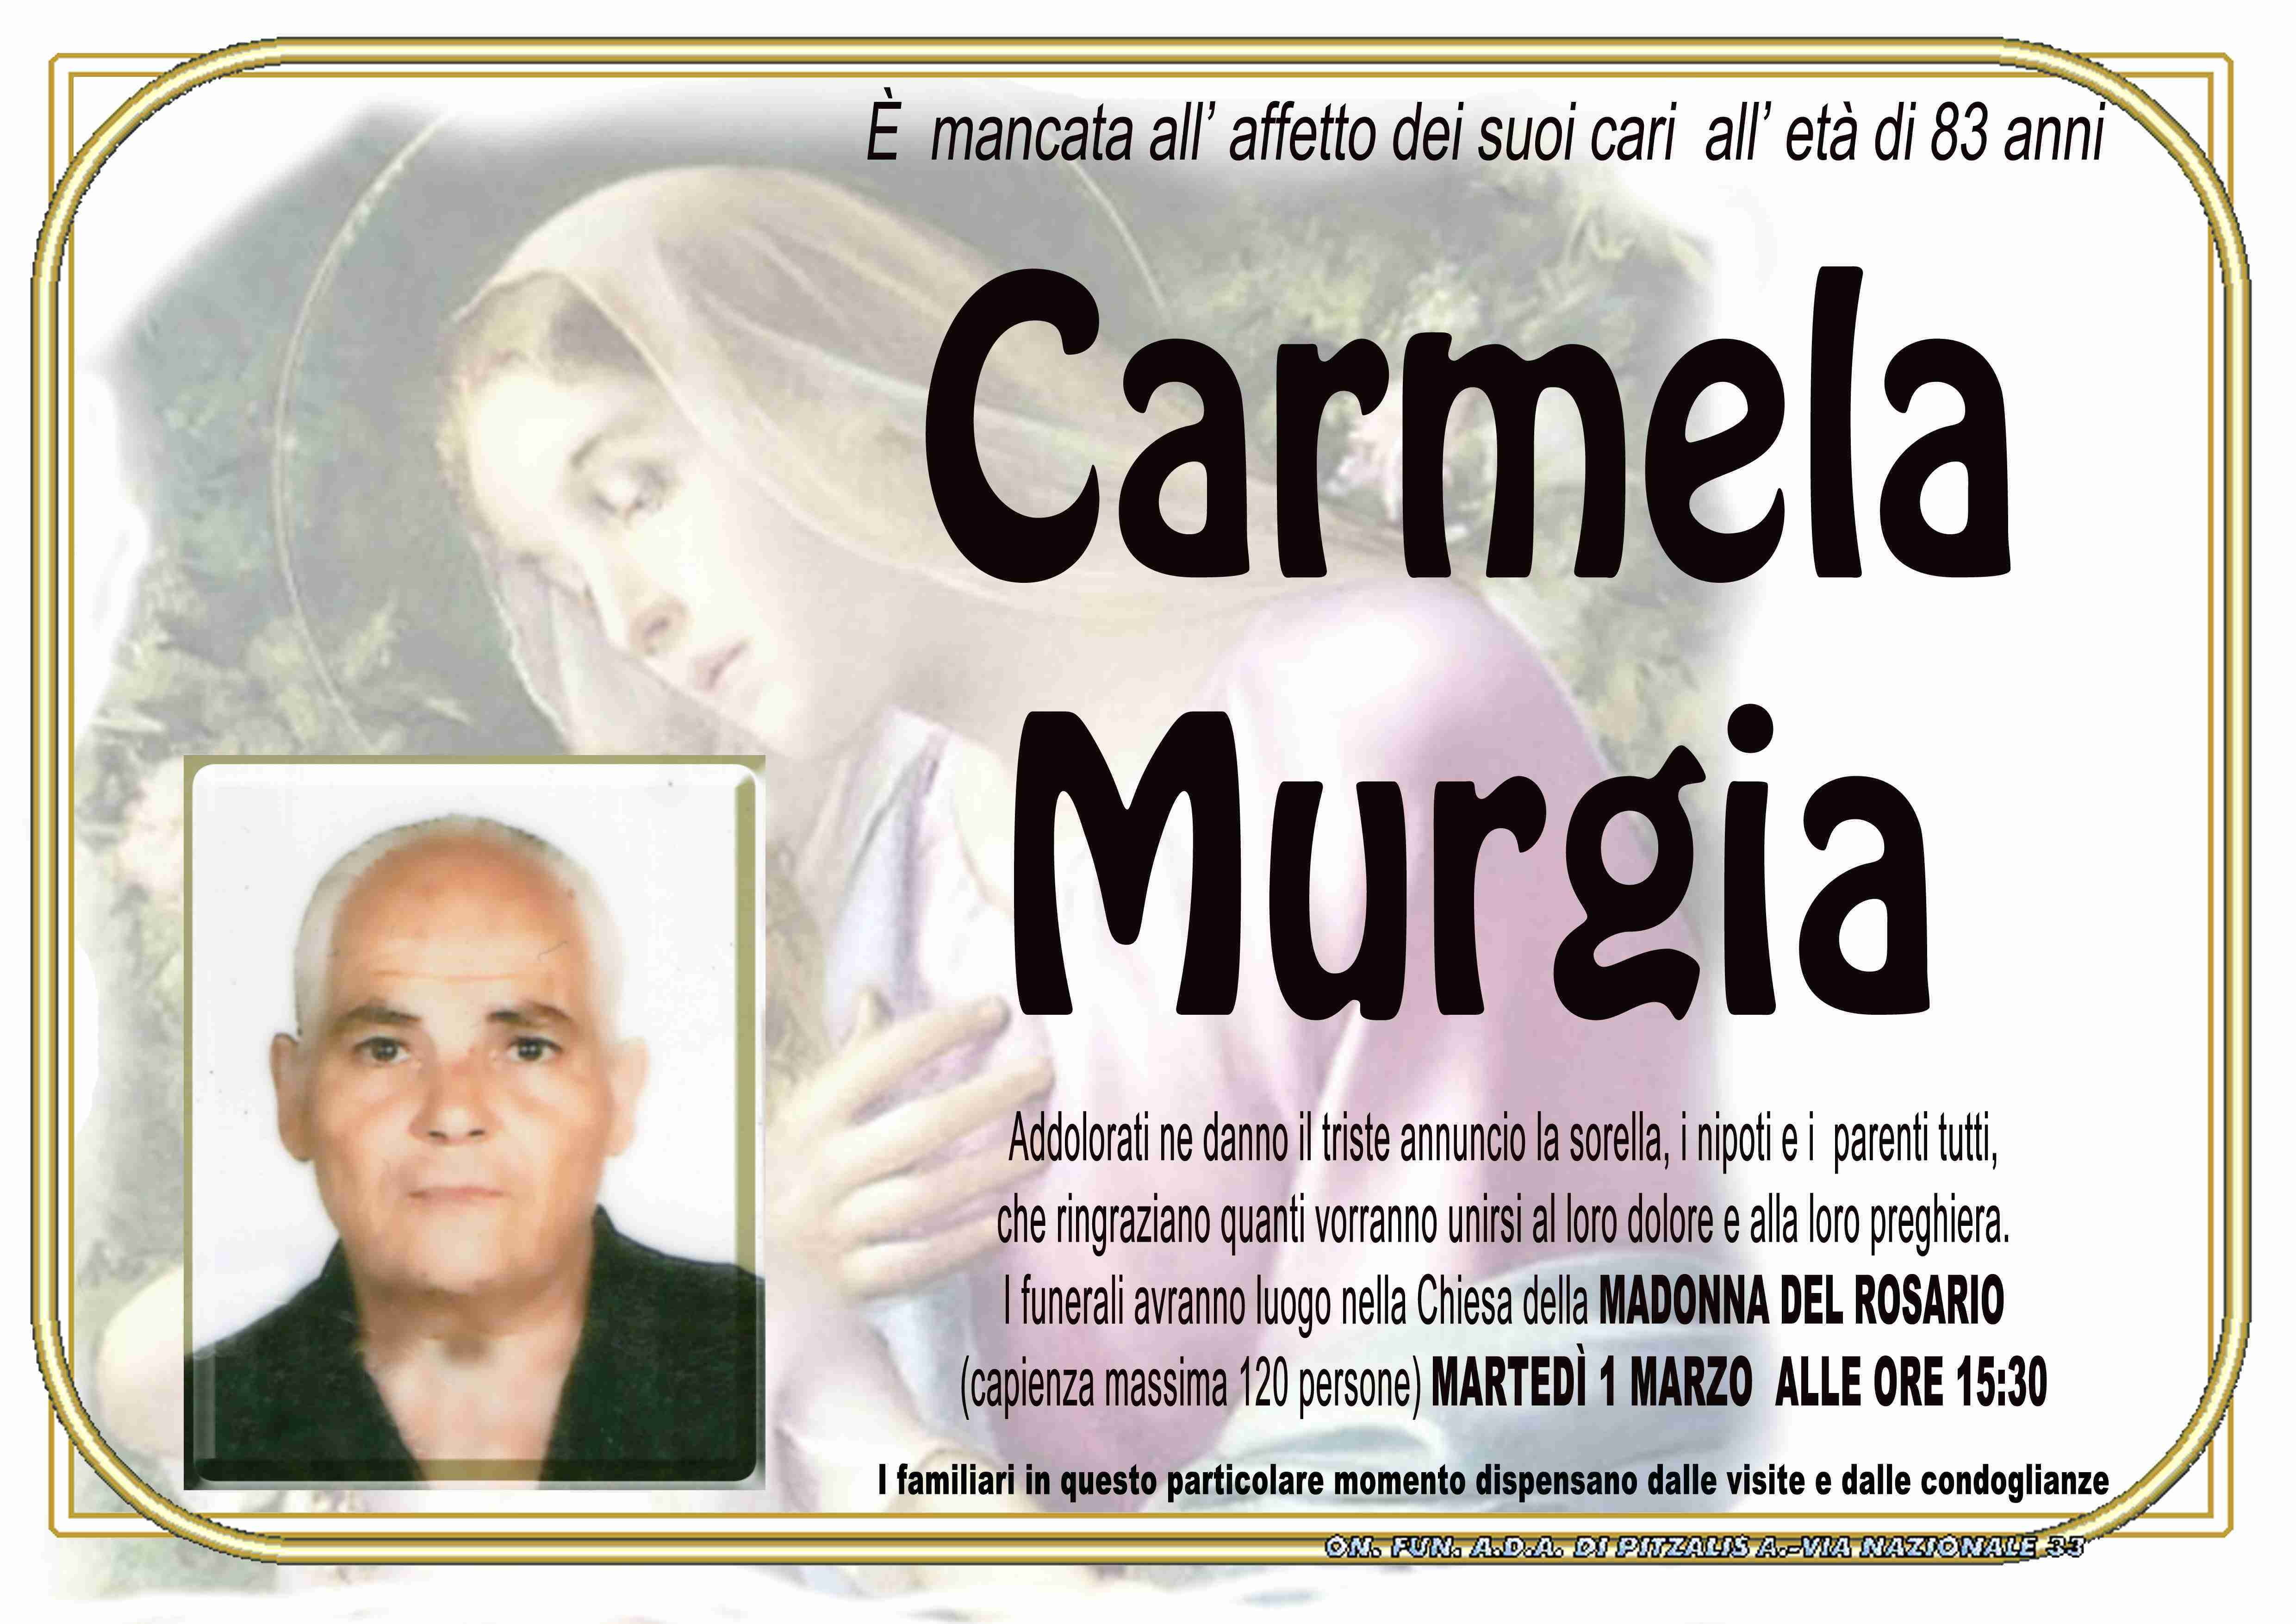 Carmela Murgia